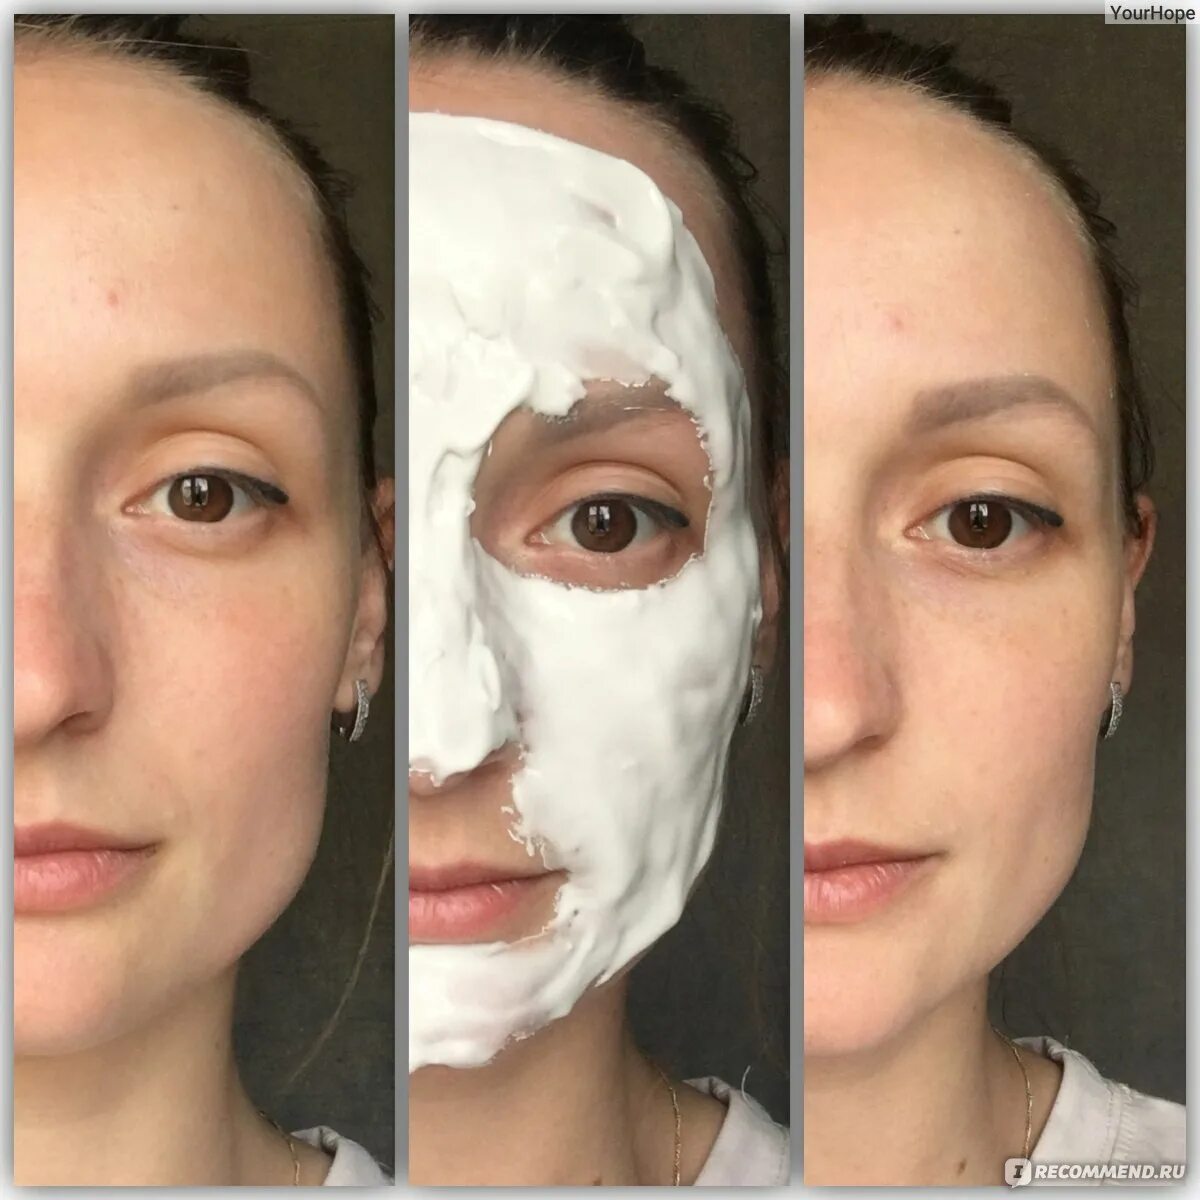 Отзывы про маску. Альгинатные маски для лица до и после. Альгинатная маска до и после. Альдегидная маска для лица. Альгинатная маска эффект.